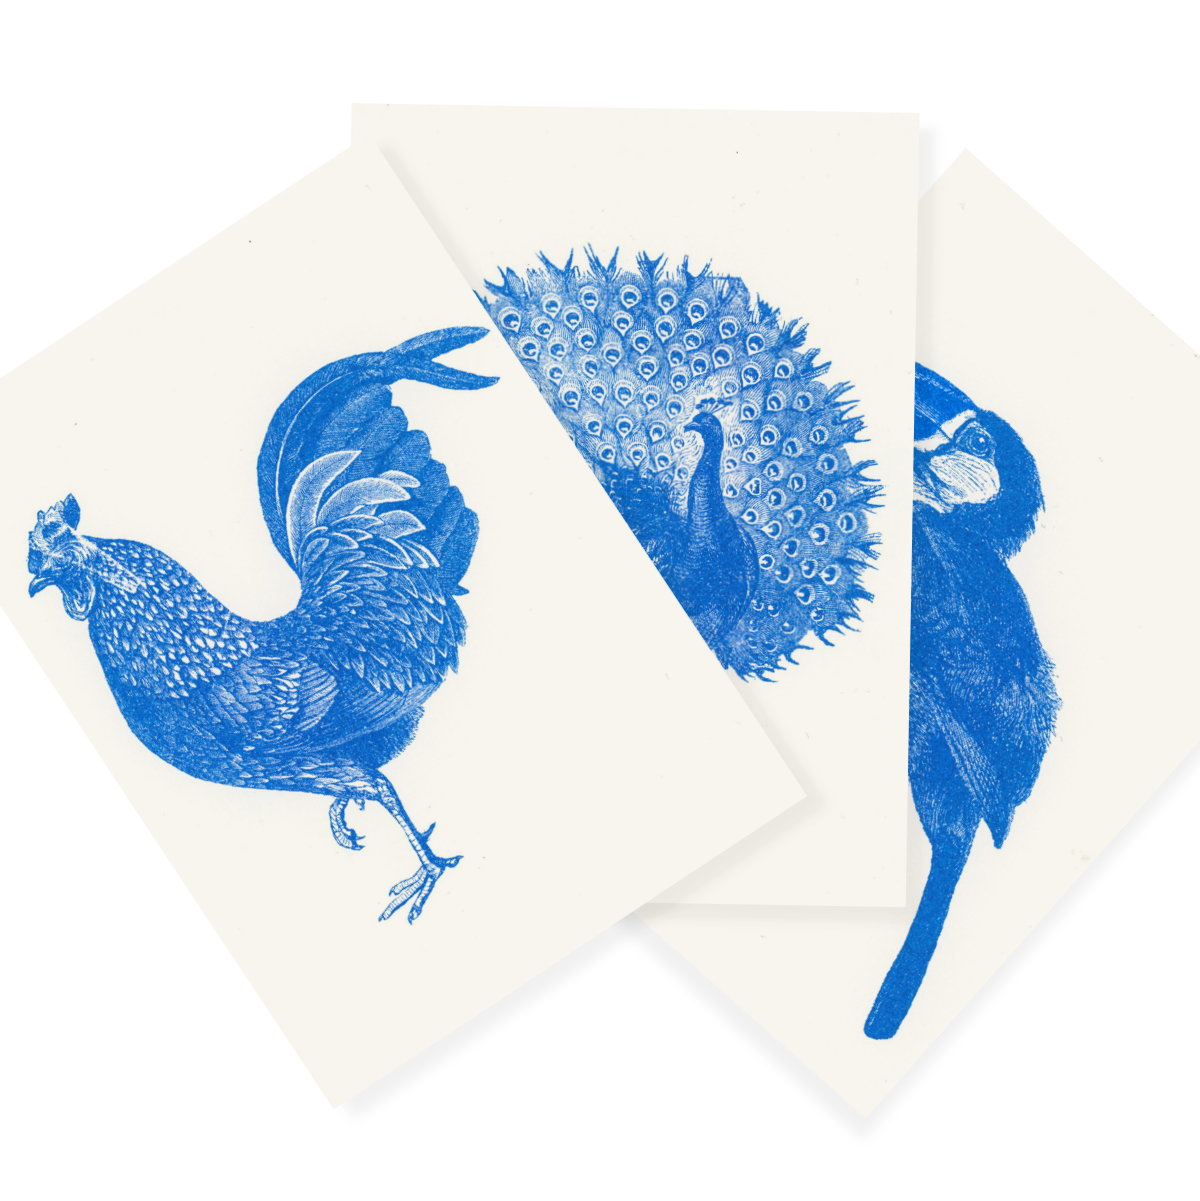 Blauer Zoo | Blue Zoo | 3 Risograph Postcards by Herr und Frau Rio